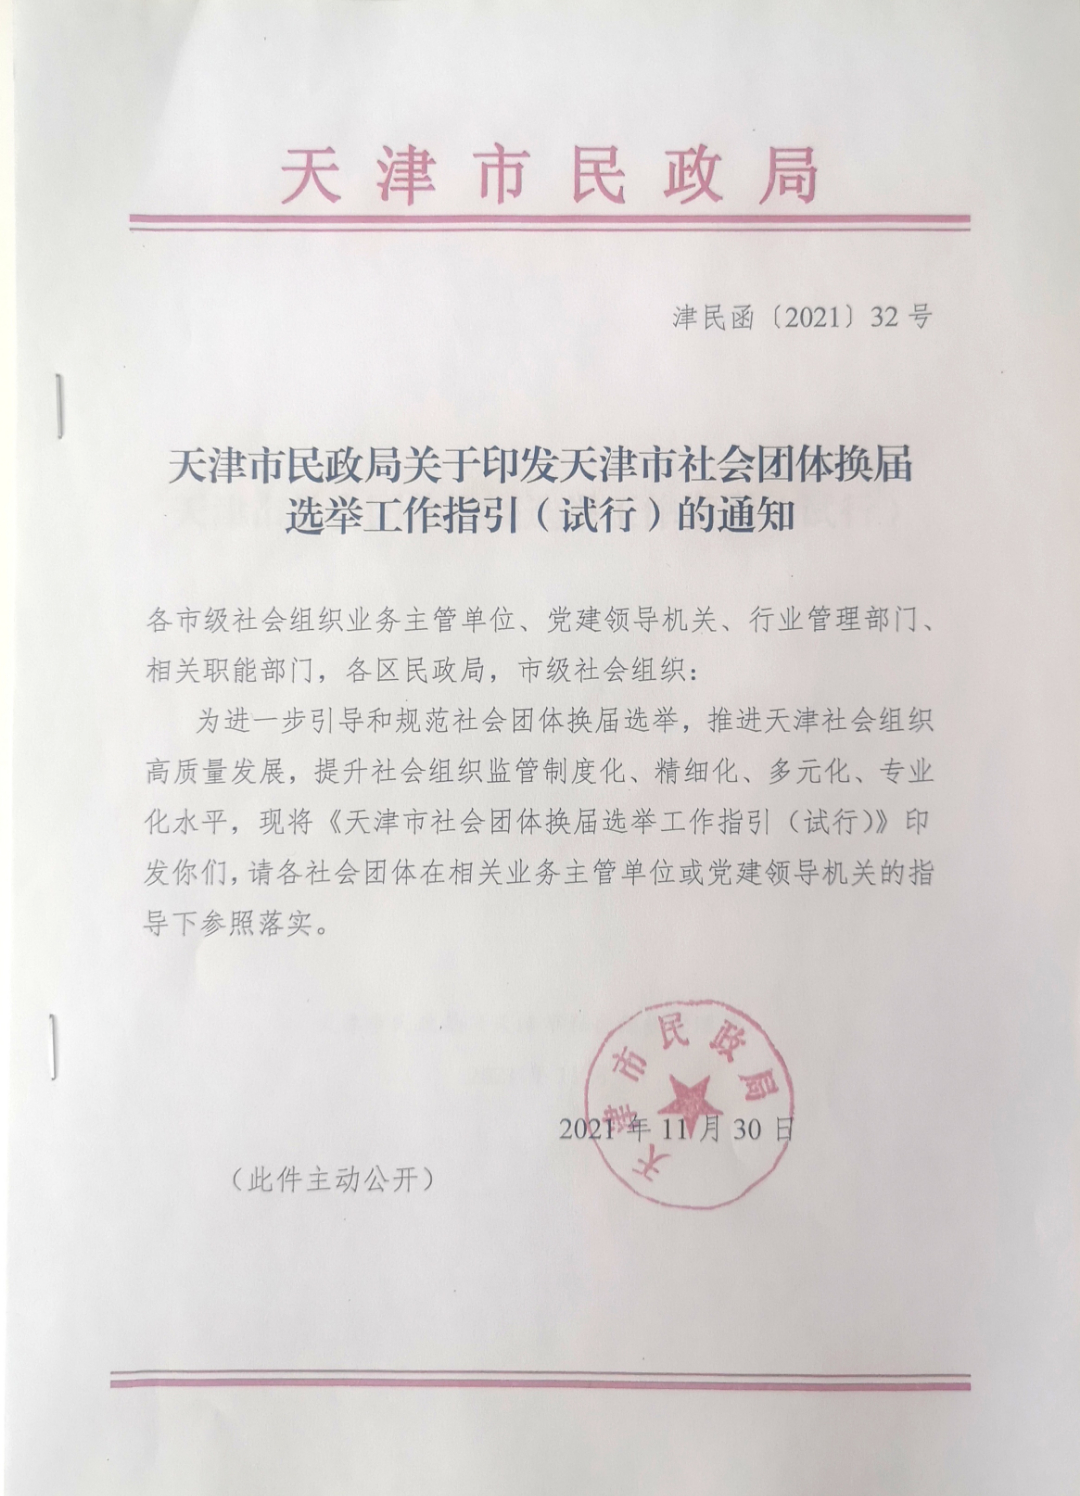 天津市民政局出台新规 进一步完善社会组织监管体系